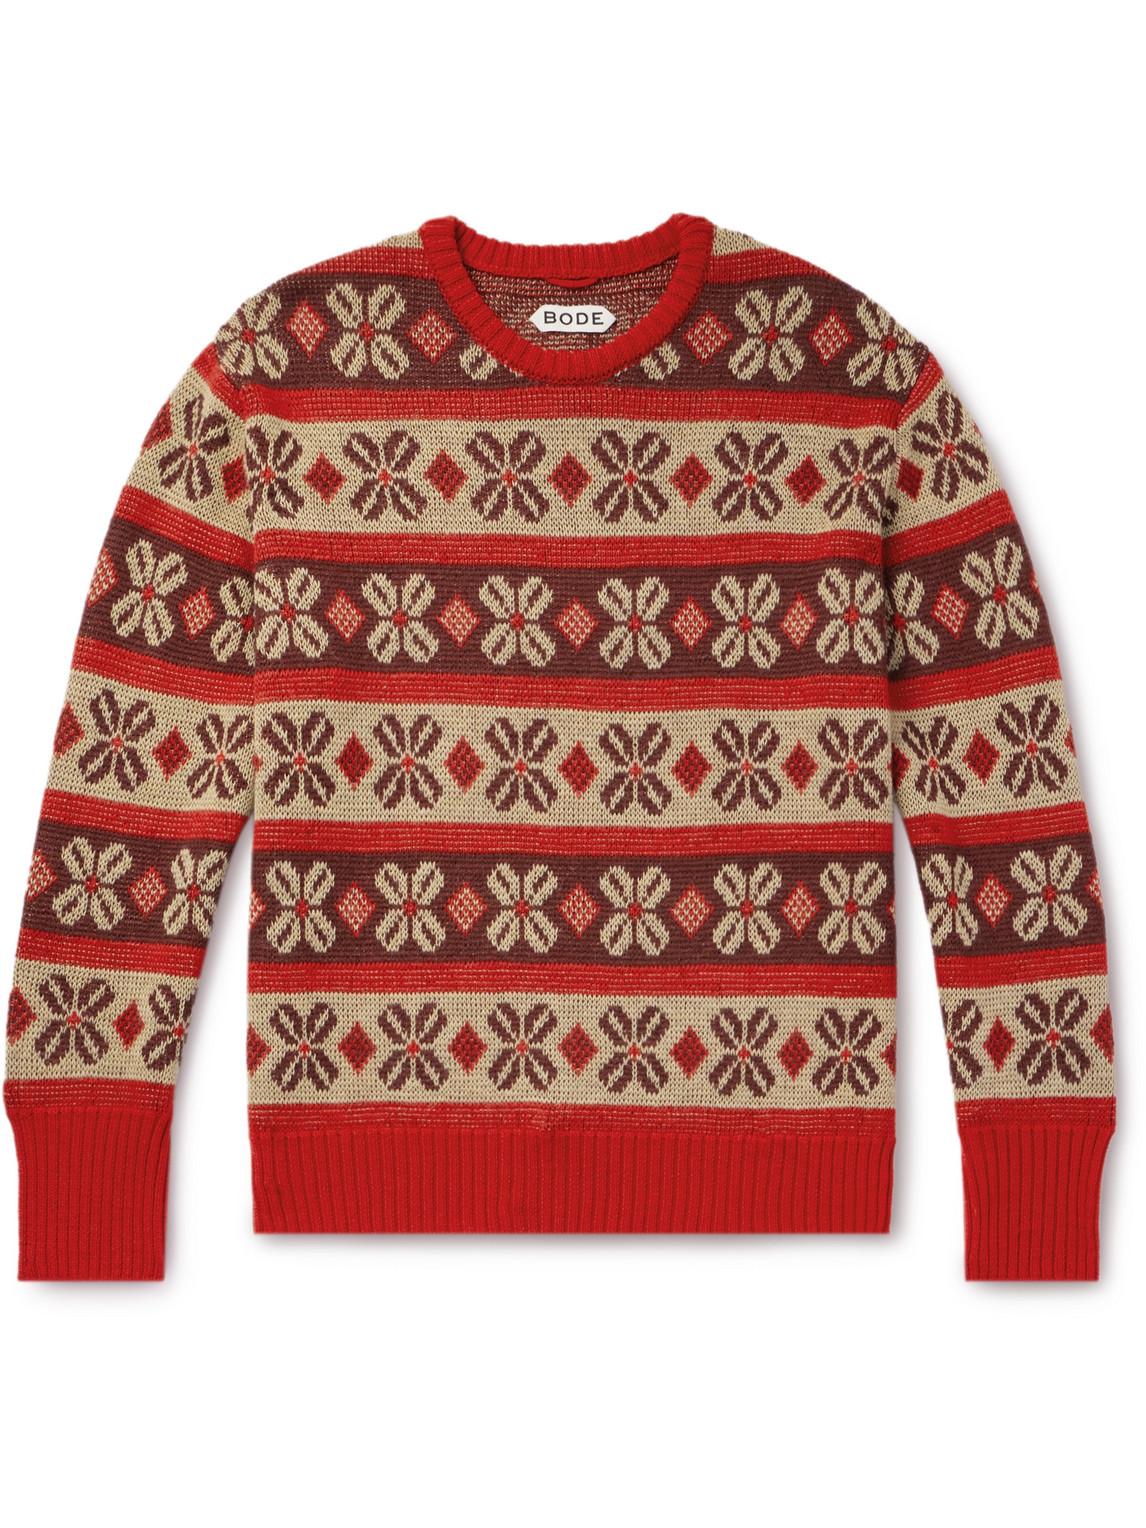 BODE - Begonia Wool-Jacquard Sweater - Men - Red - S von BODE